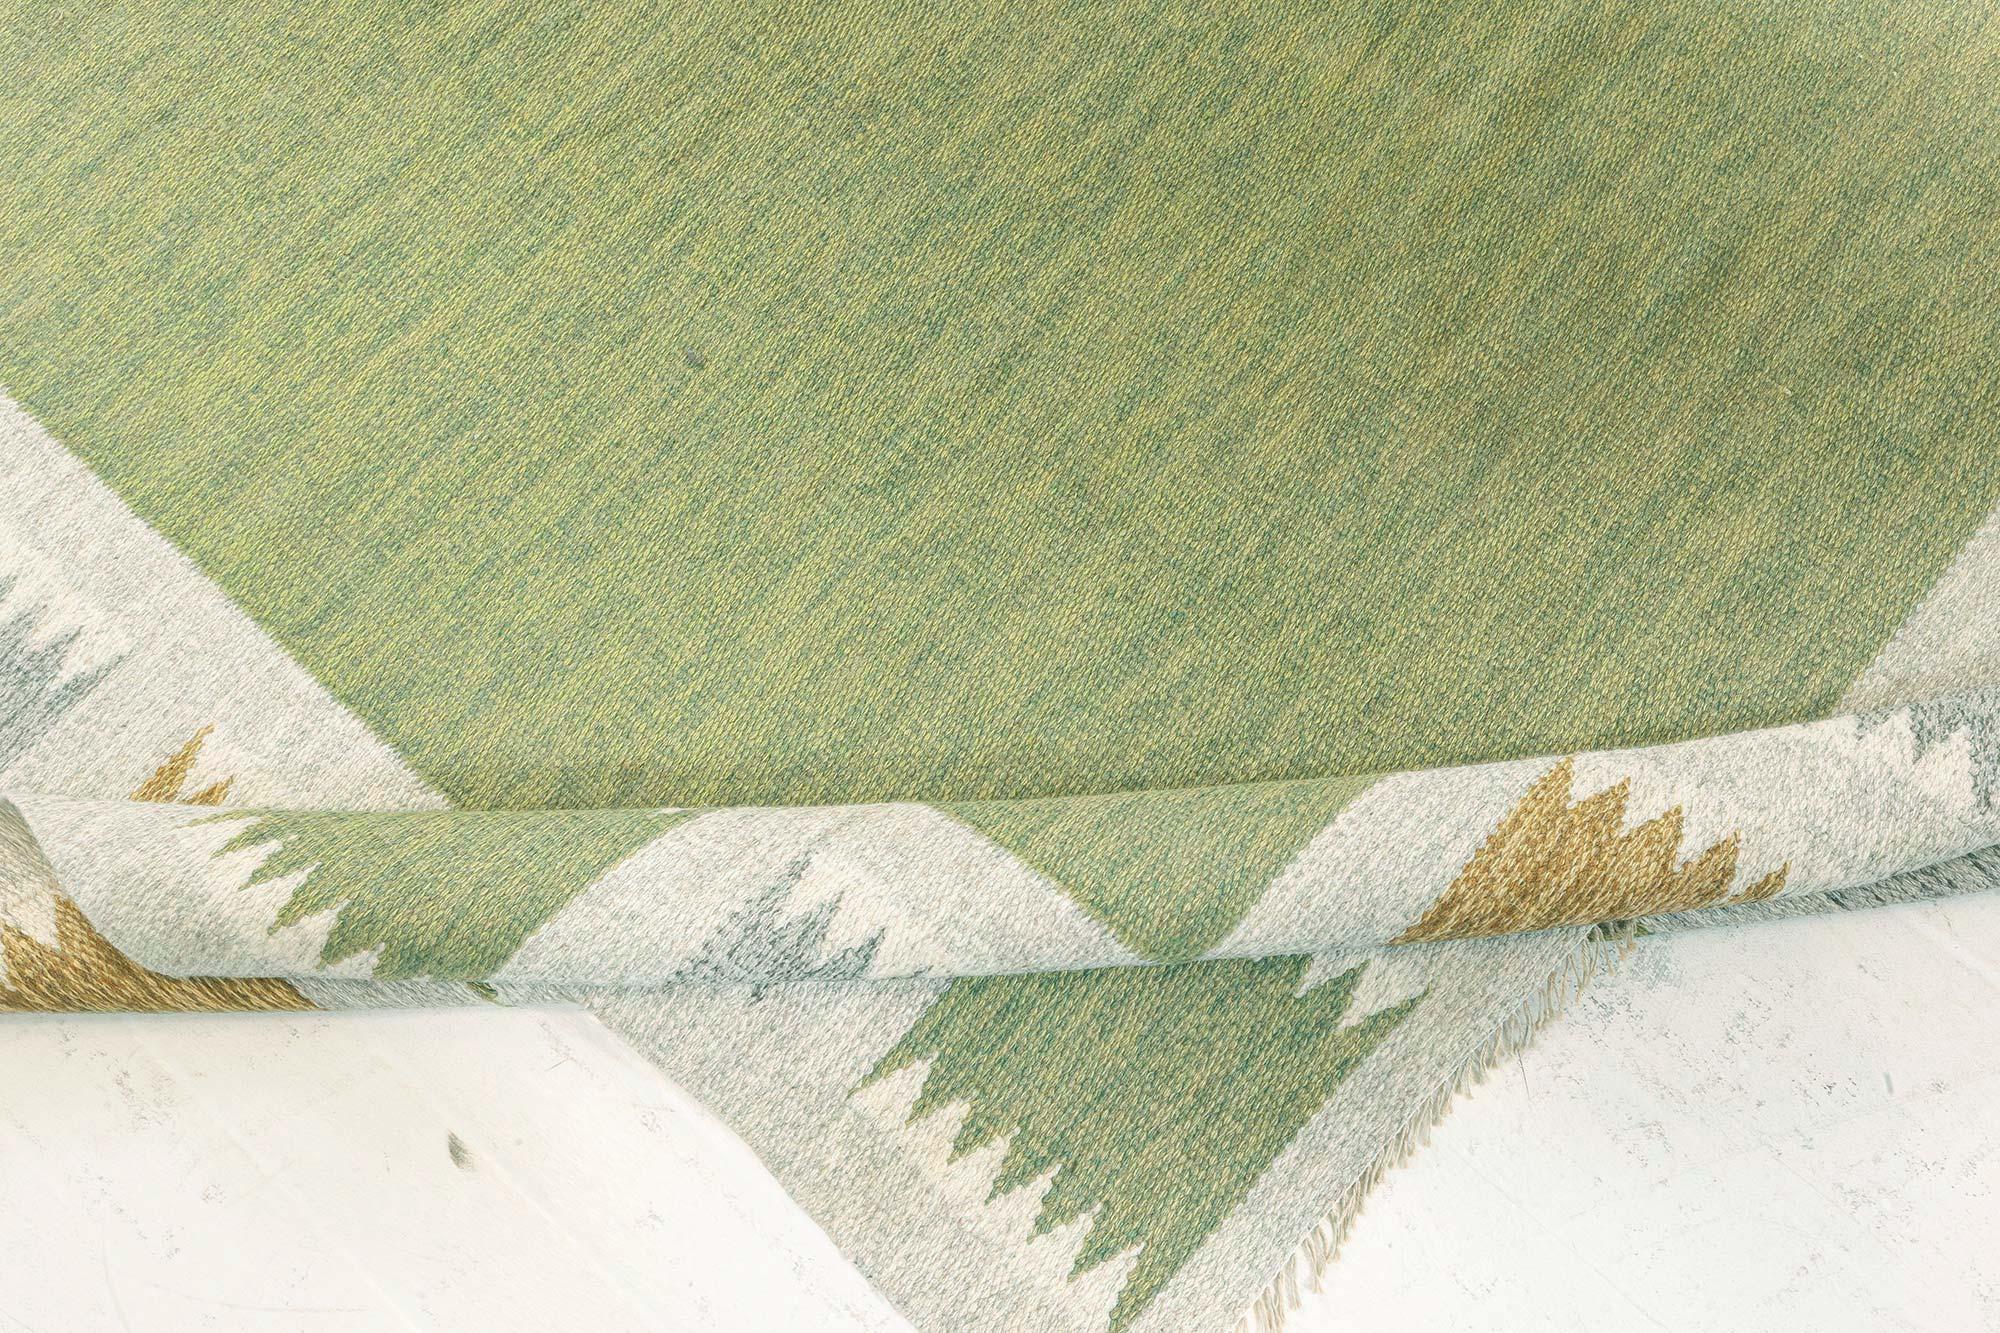 Schwedischer Flachgewebe-Teppich von Bitte Ahlgren, Vintage
Größe: 7'5